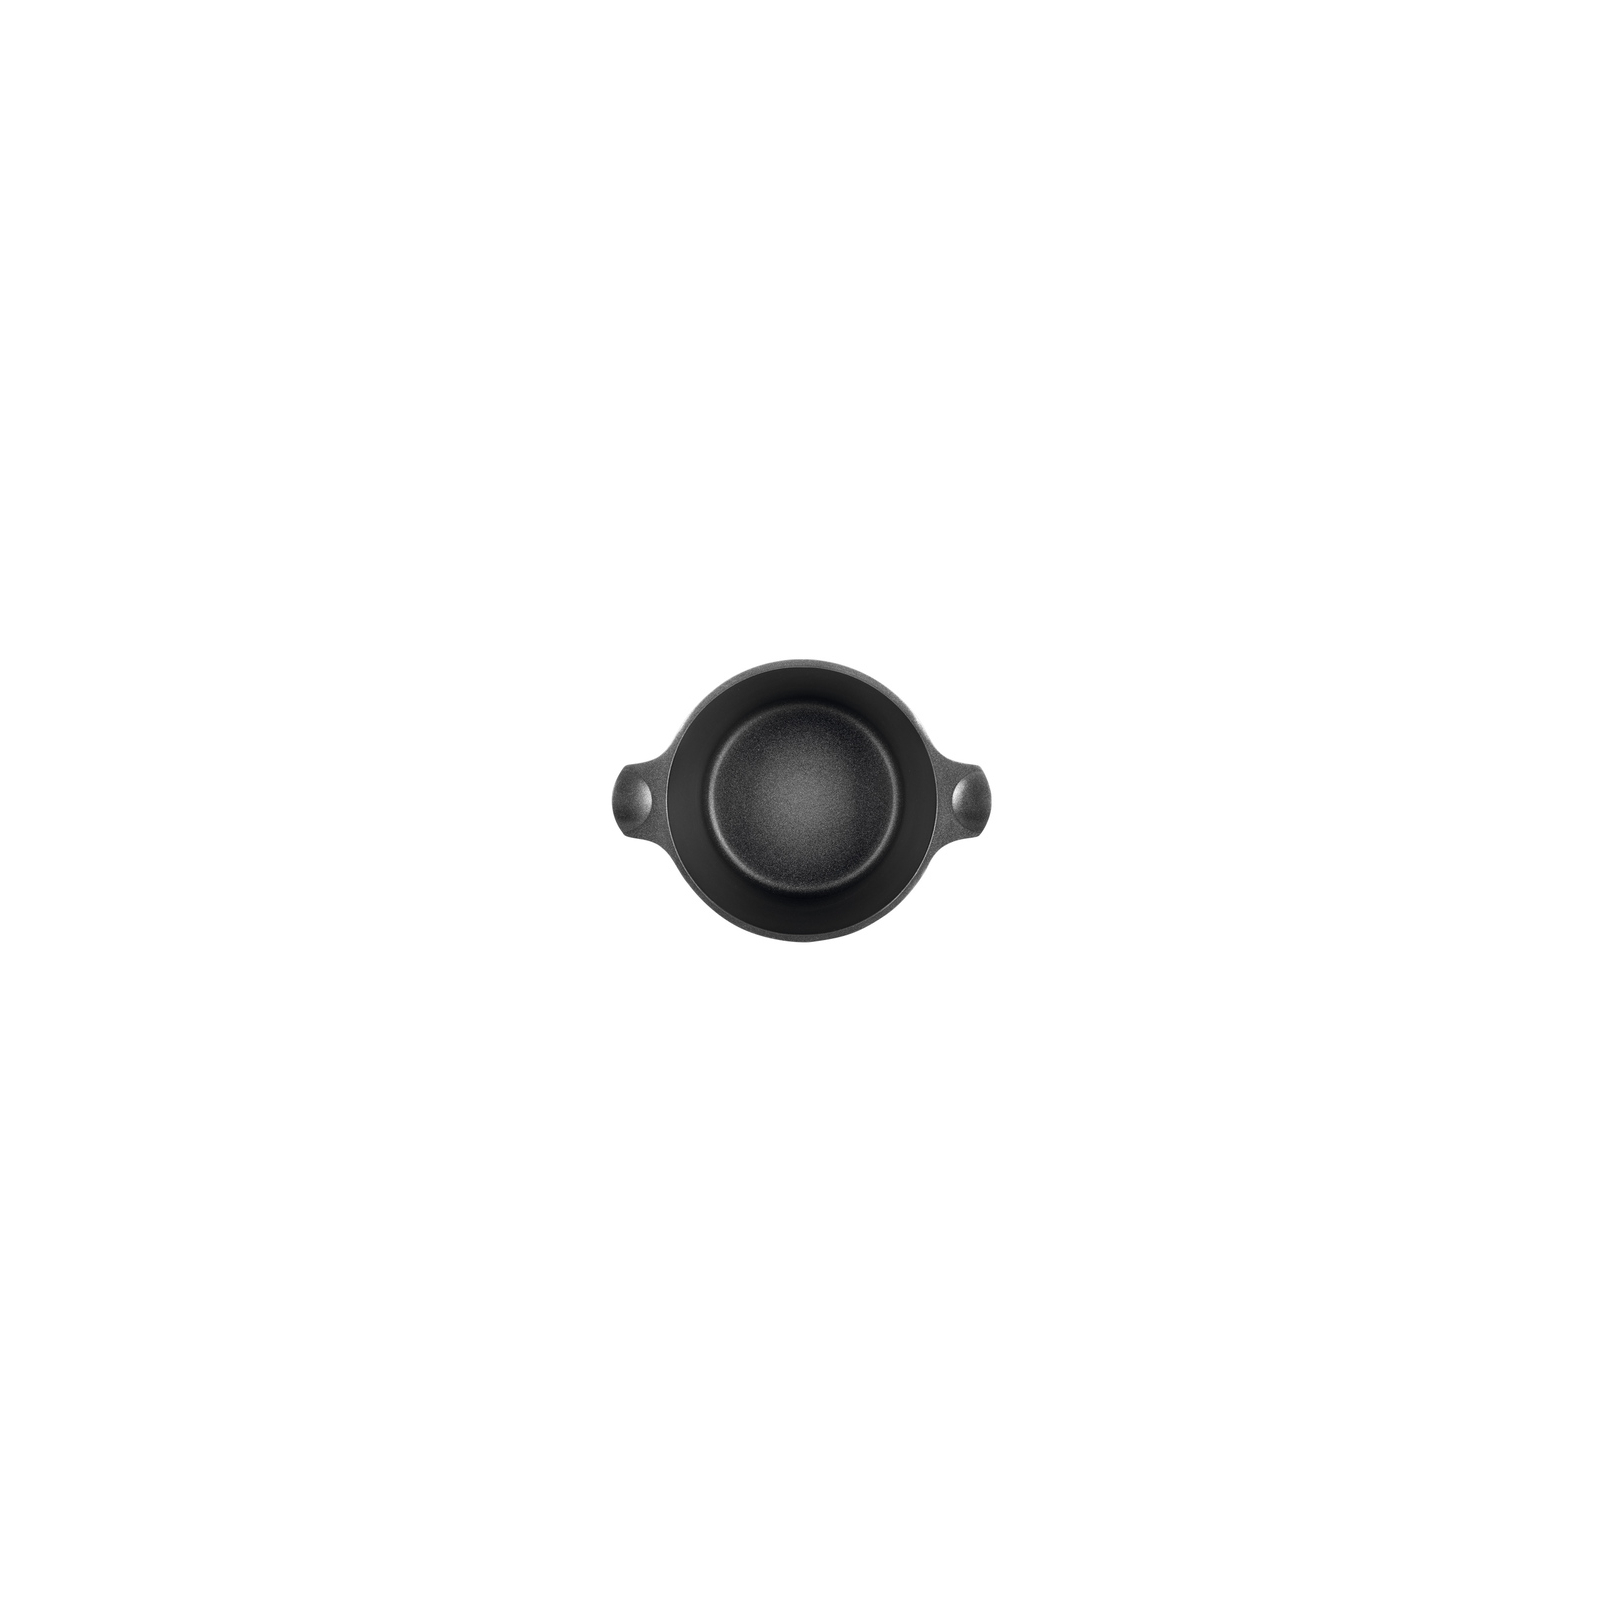 Кастрюля Ringel Zitrone black с крышкой 5,8 л (RG-2108-24/2 BL) изображение 5